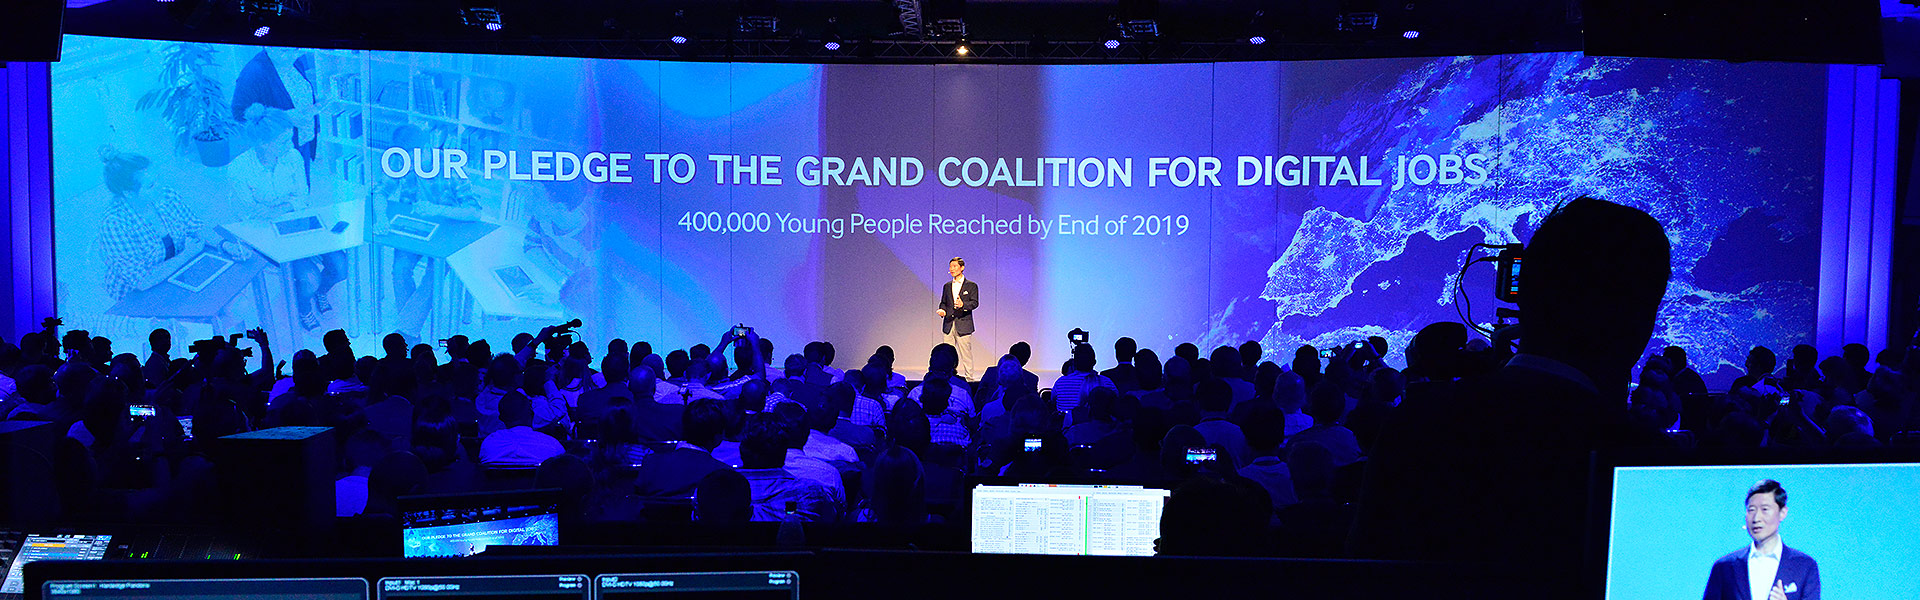 Samsung IFA 2014 Pressekonferenz Bühne Erlebnismarketing LED Screen